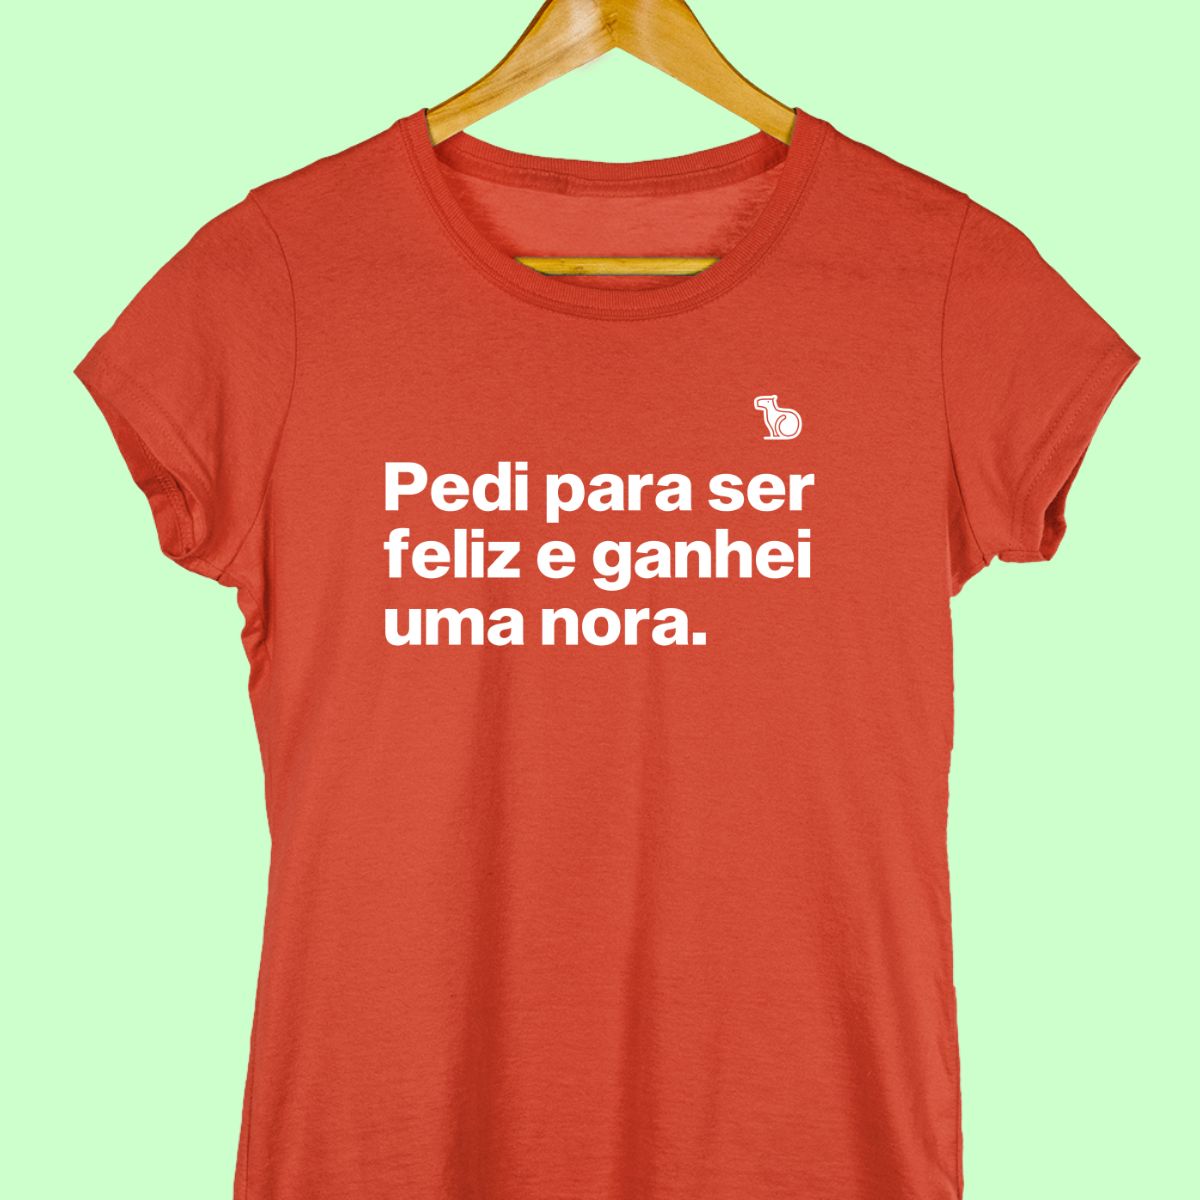 Camiseta com a frase "Pedi para ser feliz e ganhei uma nora." feminina vermelha.